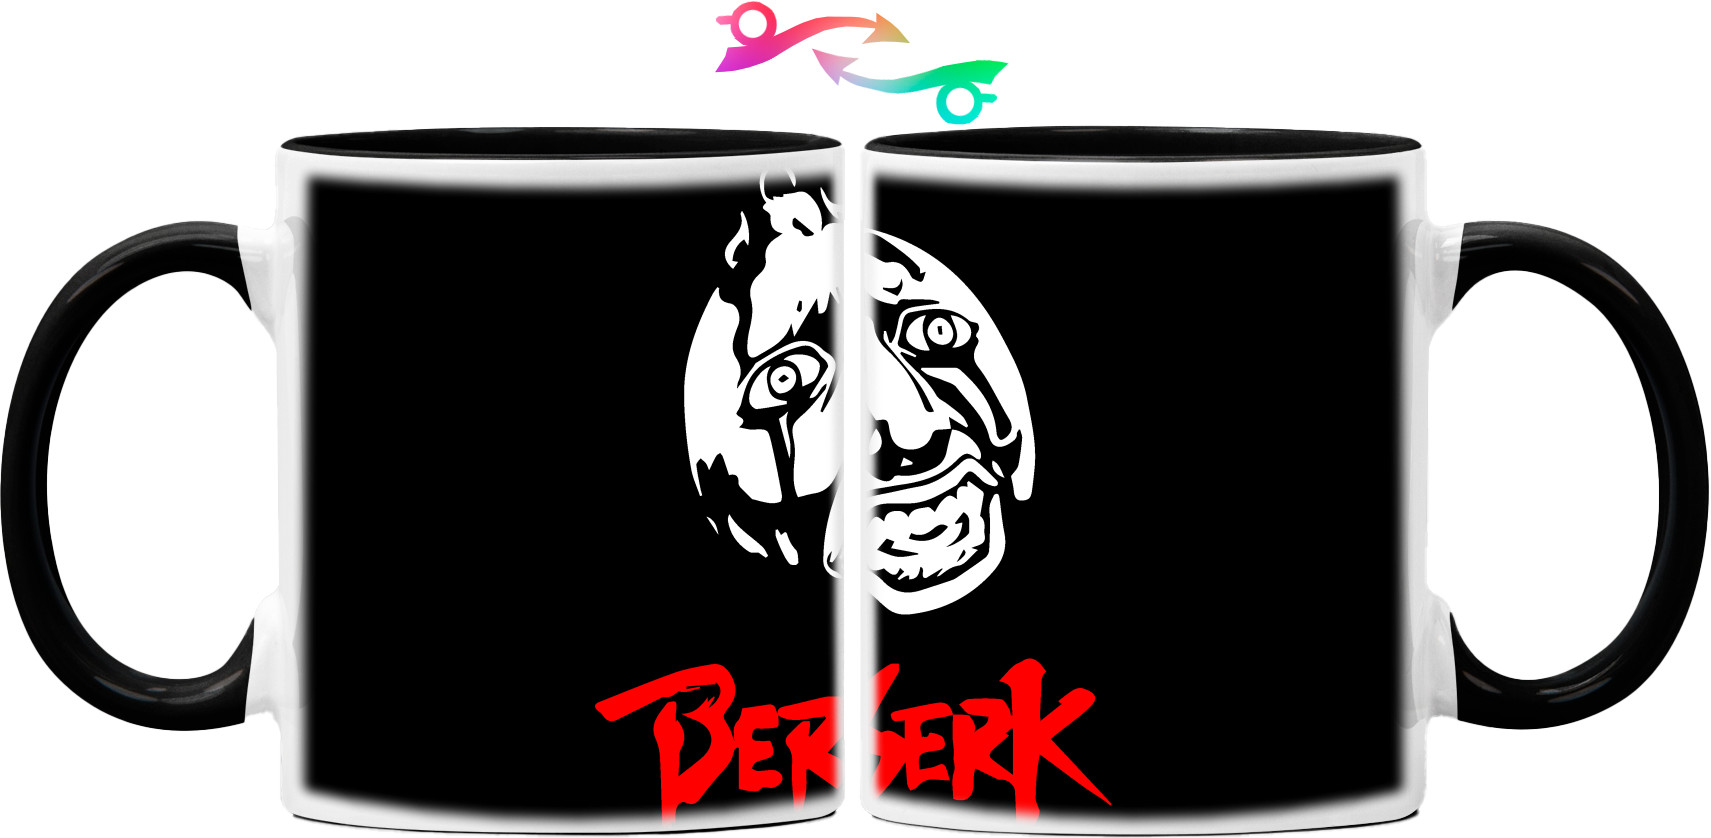 BERSERK (1)